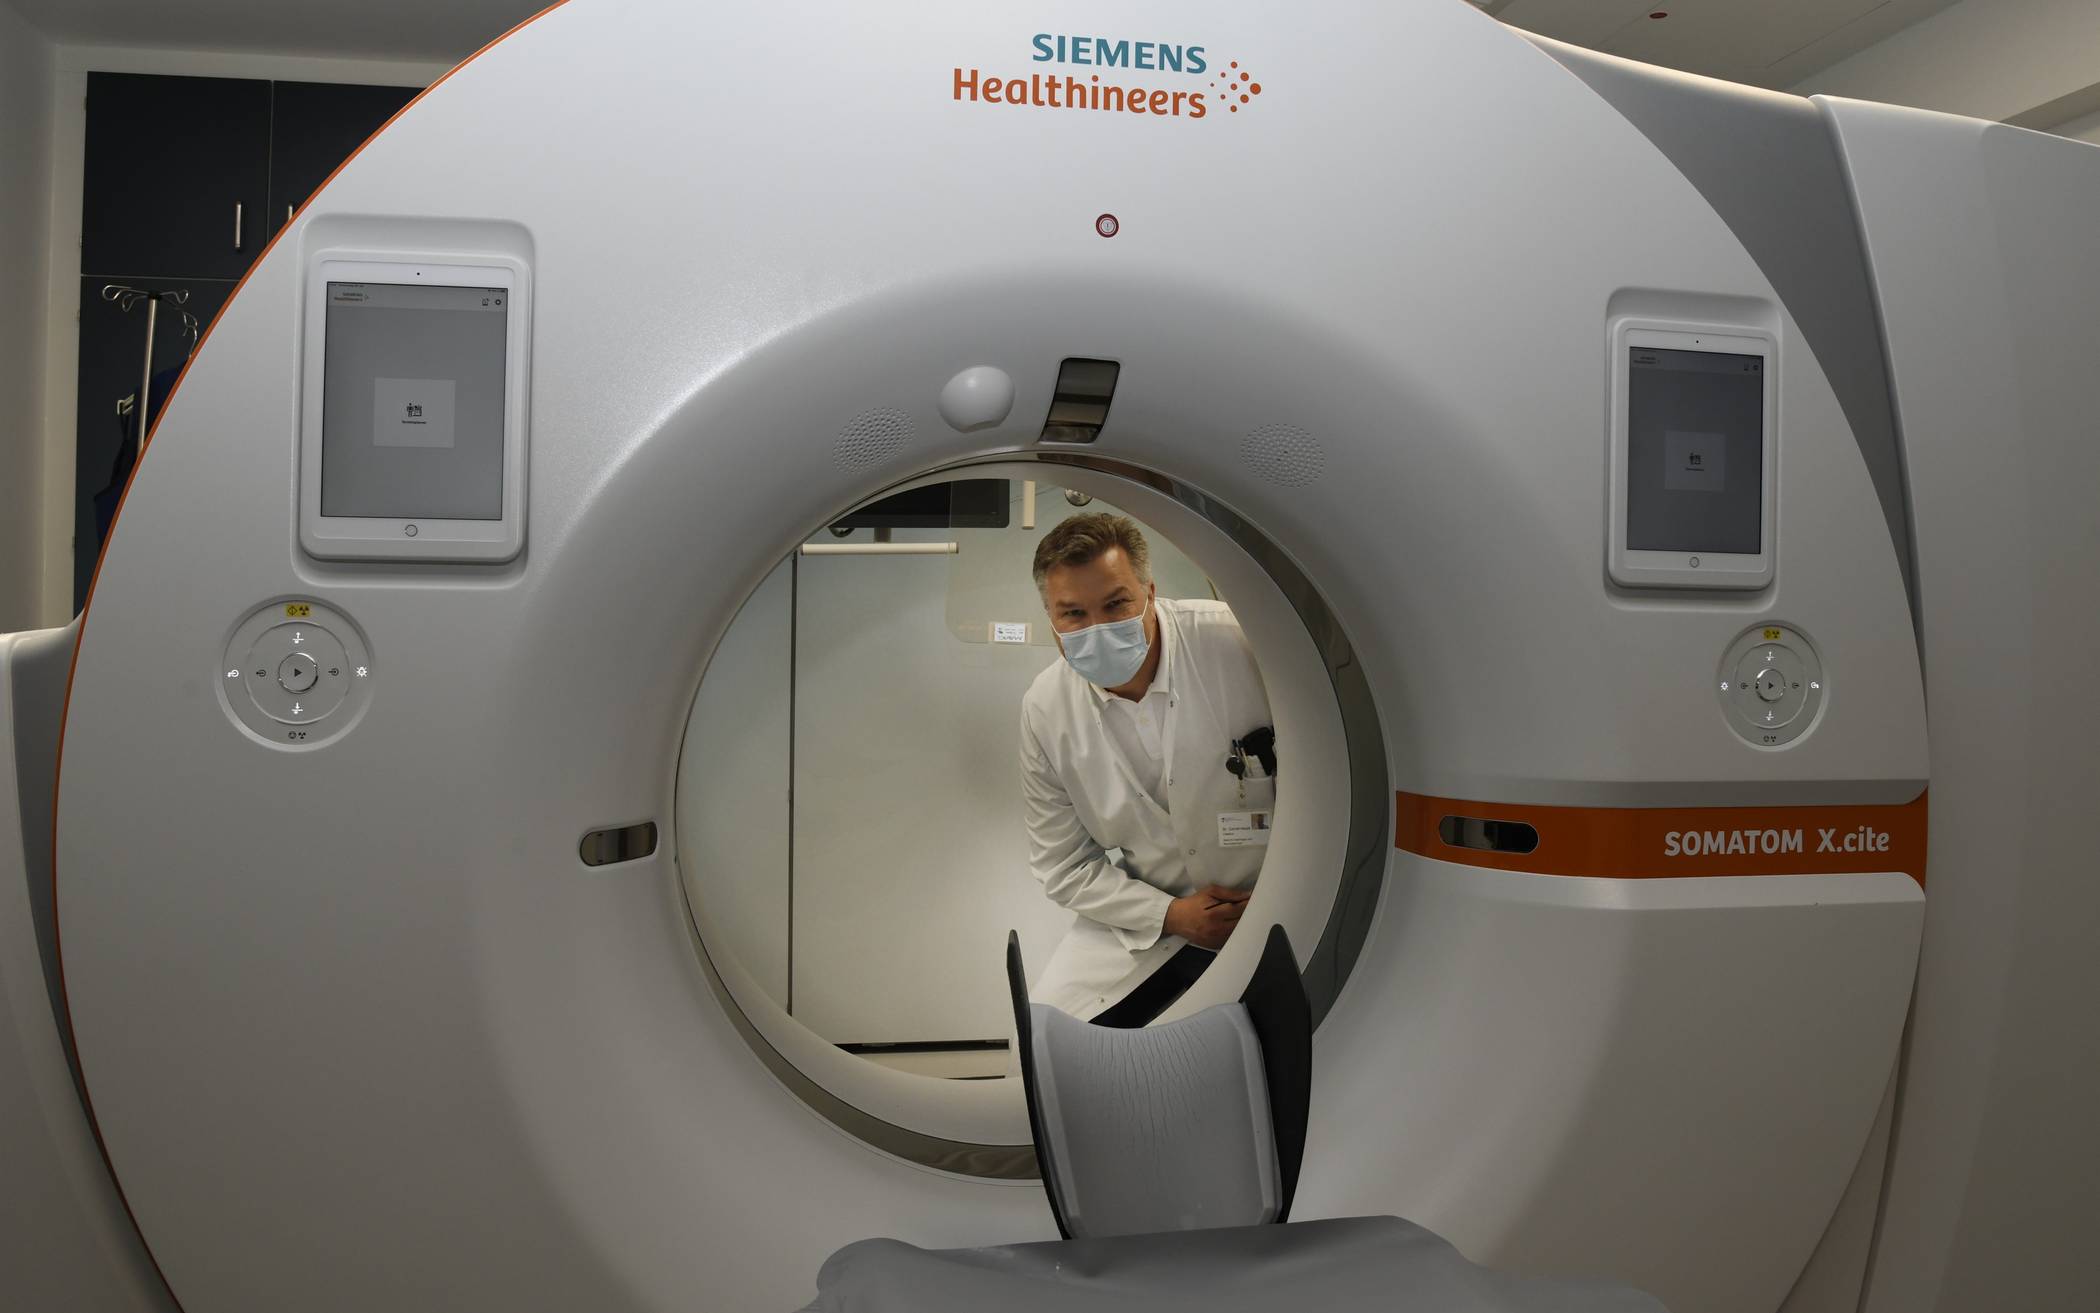  Rund 1,2 Millionen Euro wurden für die neue Ausstattung mit digitalem Röntgensystem, Computertomograf (CT) sowie Ultraschall- und Narkosegeräten investiert. 